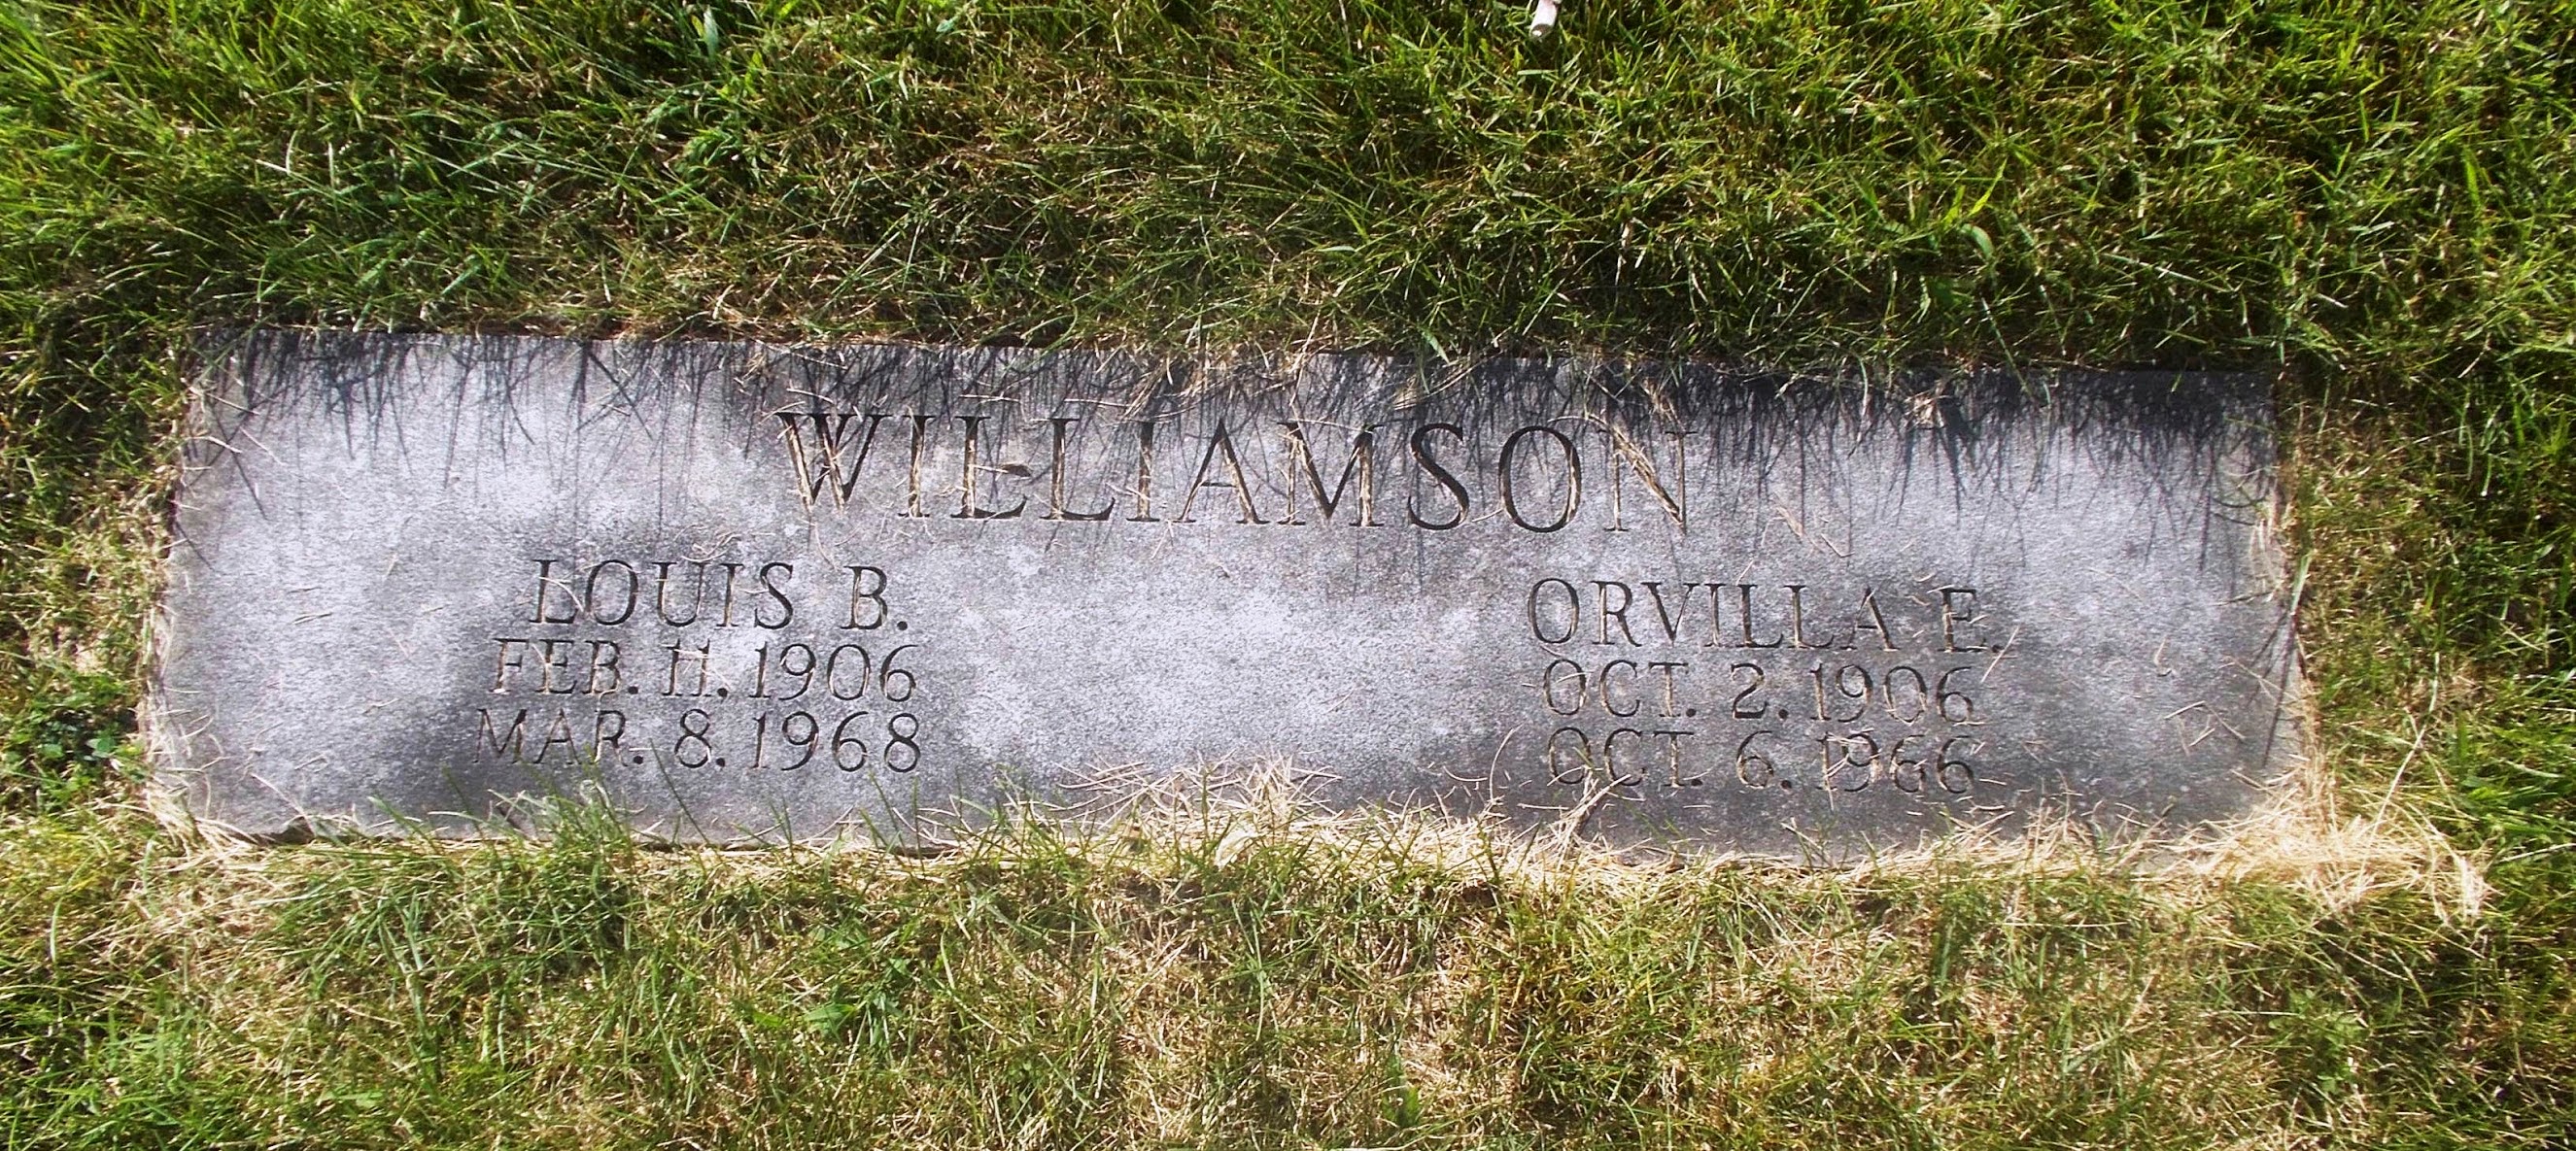 Orvilla E Williamson